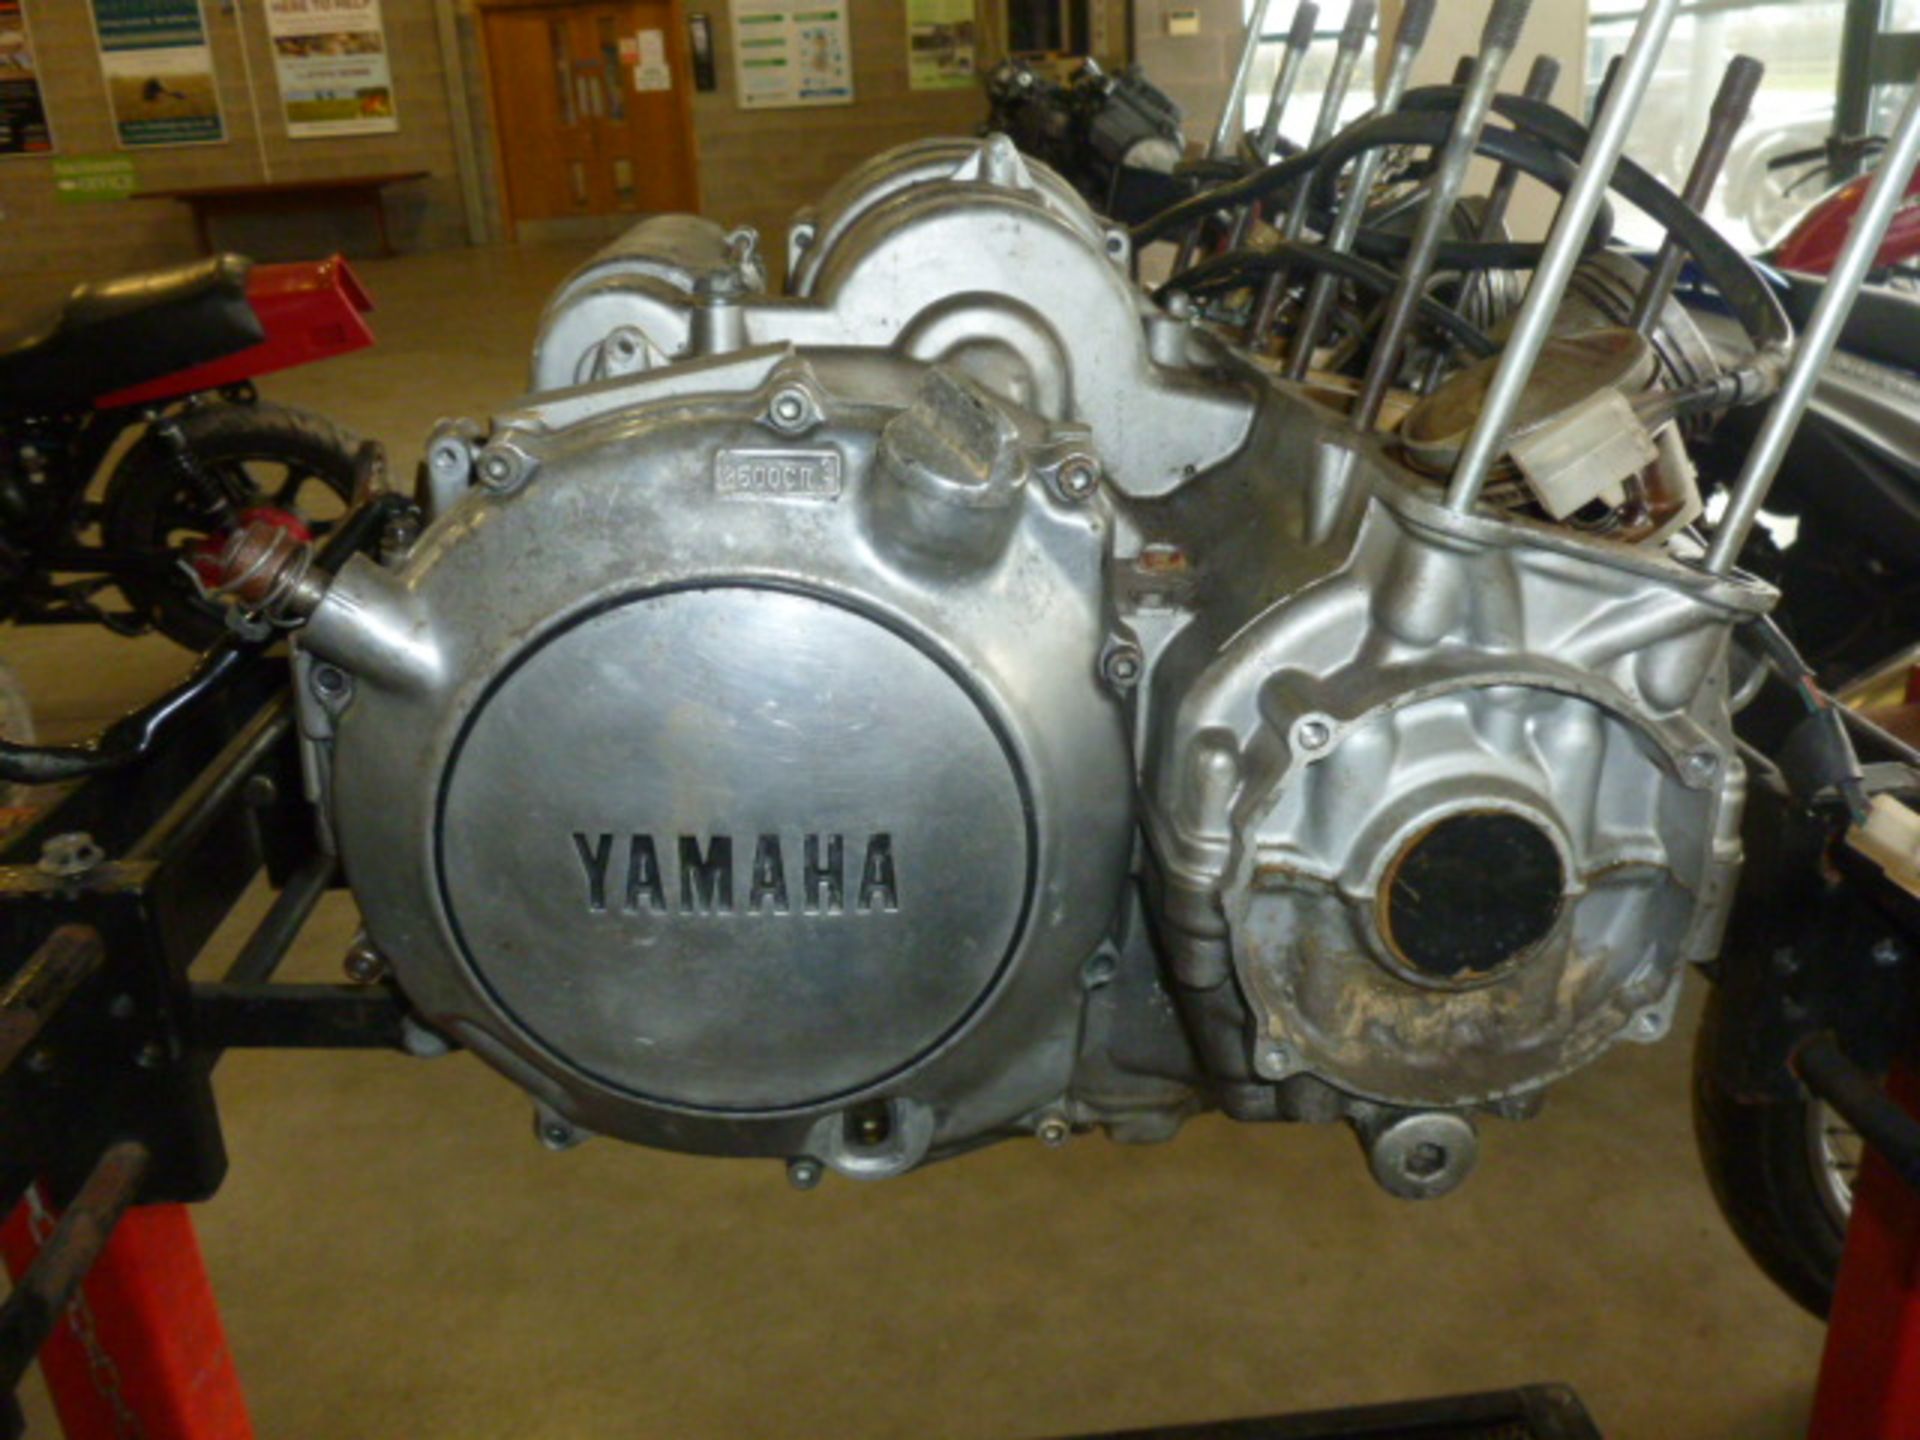 YAMAHA ENGINE ON BENCH - Image 2 of 2